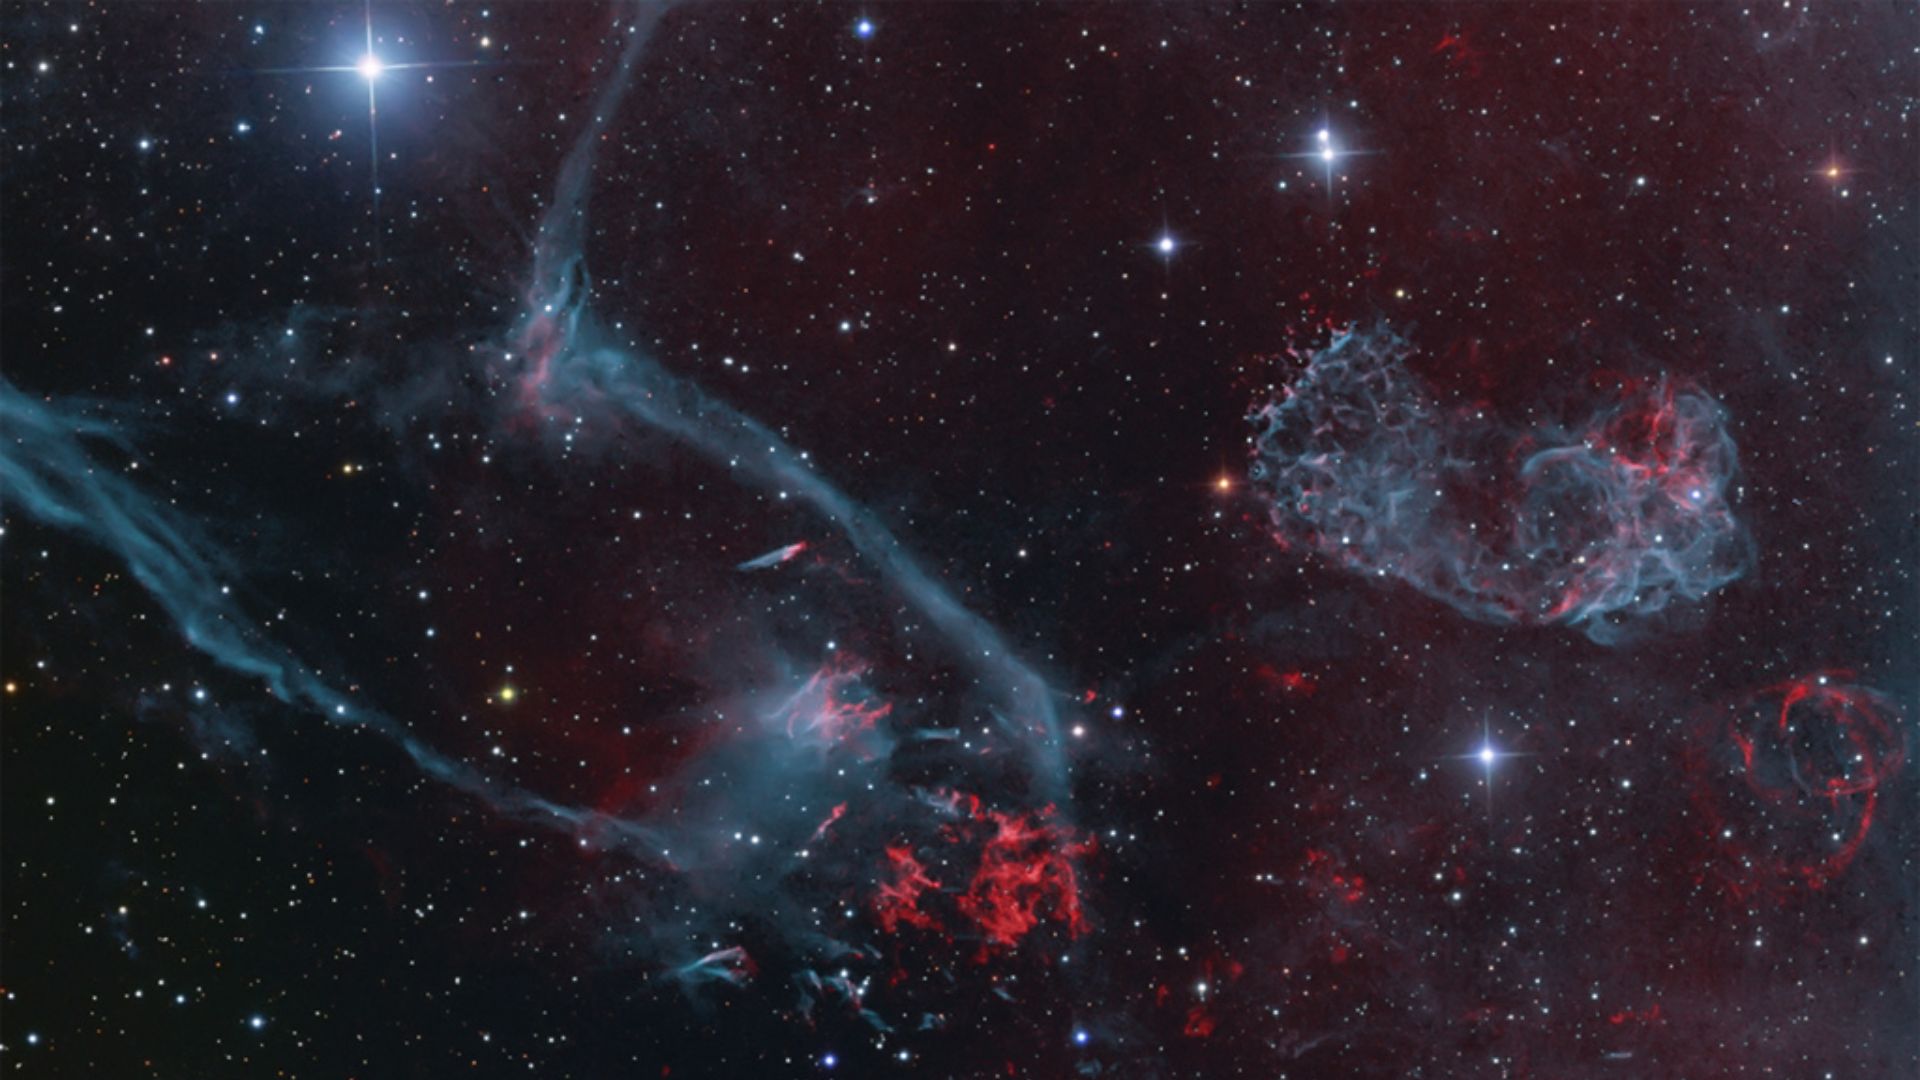 Resultado da explosão de uma estrela massiva, o remanescente de supernova Puppis A está a cerca de 7 mil anos-luz de distância, na direção da Constelação de Puppis (“A Popa”). À medida que o remanescente da supernova (no canto superior direito) se expande em seu ambiente aglomerado e não uniforme, filamentos de átomos de oxigênio em choque brilham em tons verde-azulados. Hidrogênio e nitrogênio estão em vermelho. A luz da própria supernova inicial, desencadeada pelo colapso do núcleo da estrela massiva, teria chegado à Terra há cerca de 3,7 mil anos. Ainda brilhando em todo o espectro eletromagnético, Puppis A continua sendo uma das fontes mais cintilantes de raios-X no céu